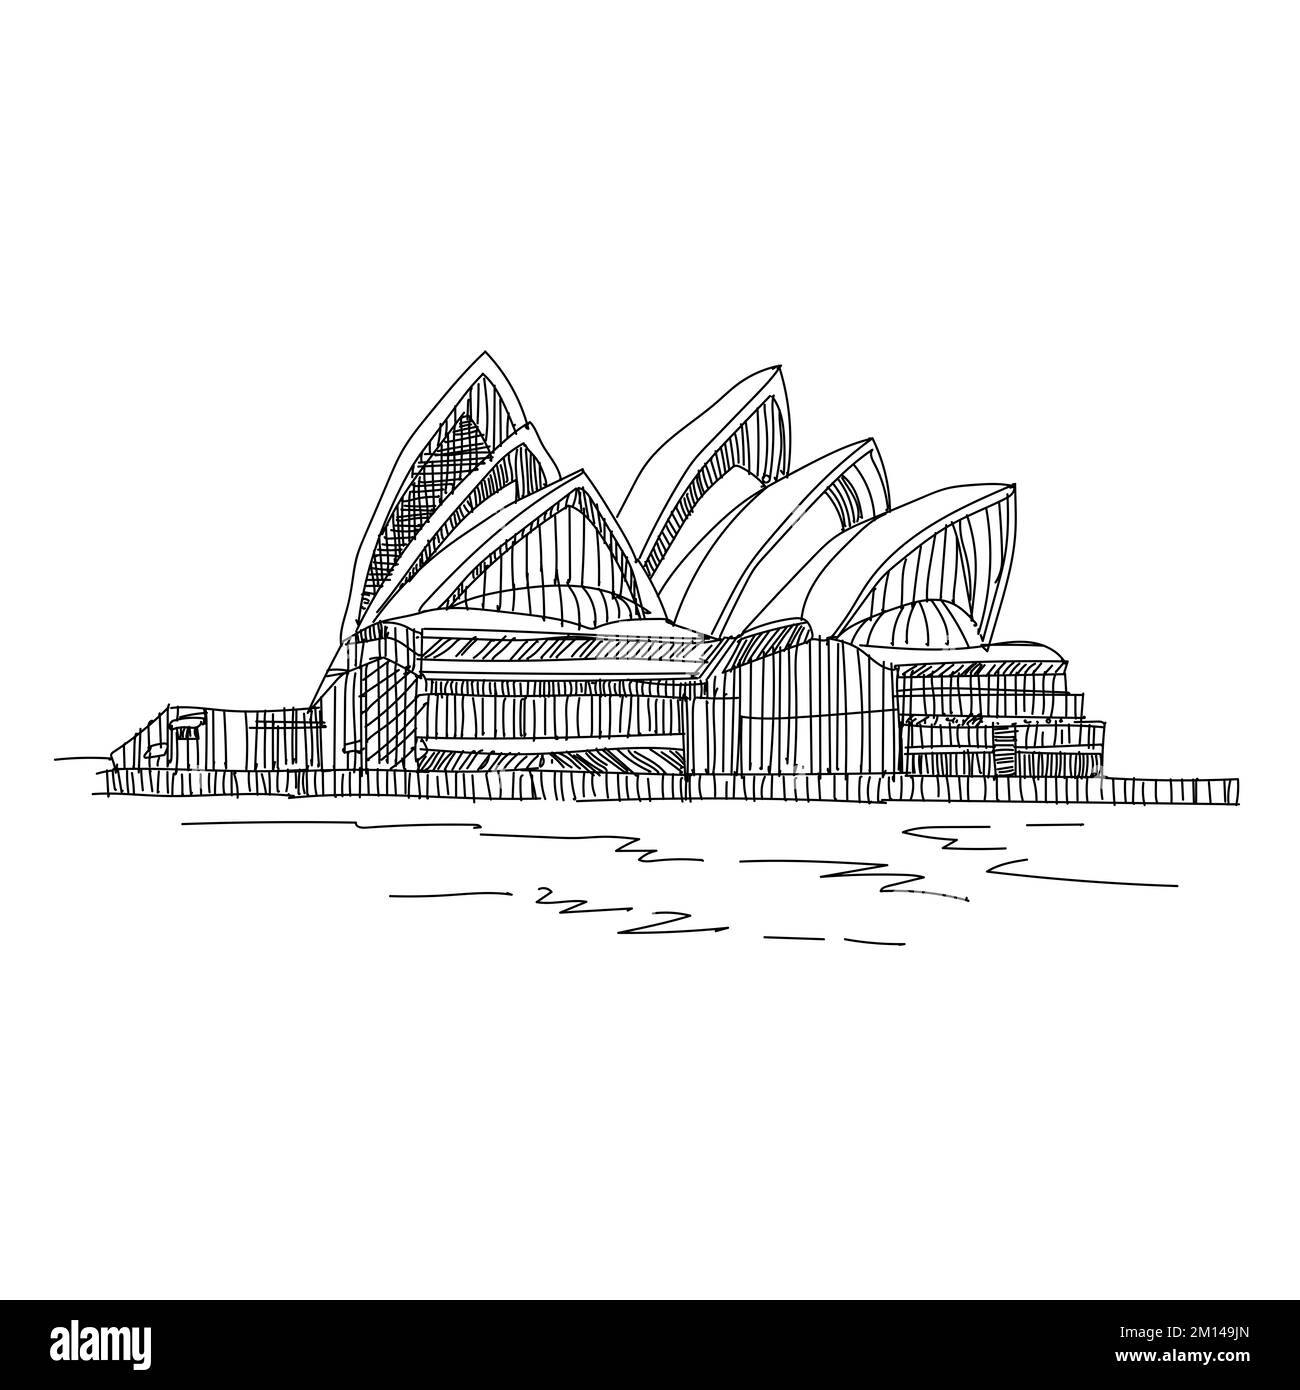 Die Skyline von Sydney, Australien. Circular Quay und Opernhaus. Touristische Punkte, Reisefoto, sonniger Tag die Skyline von Sydney Art Stockfoto